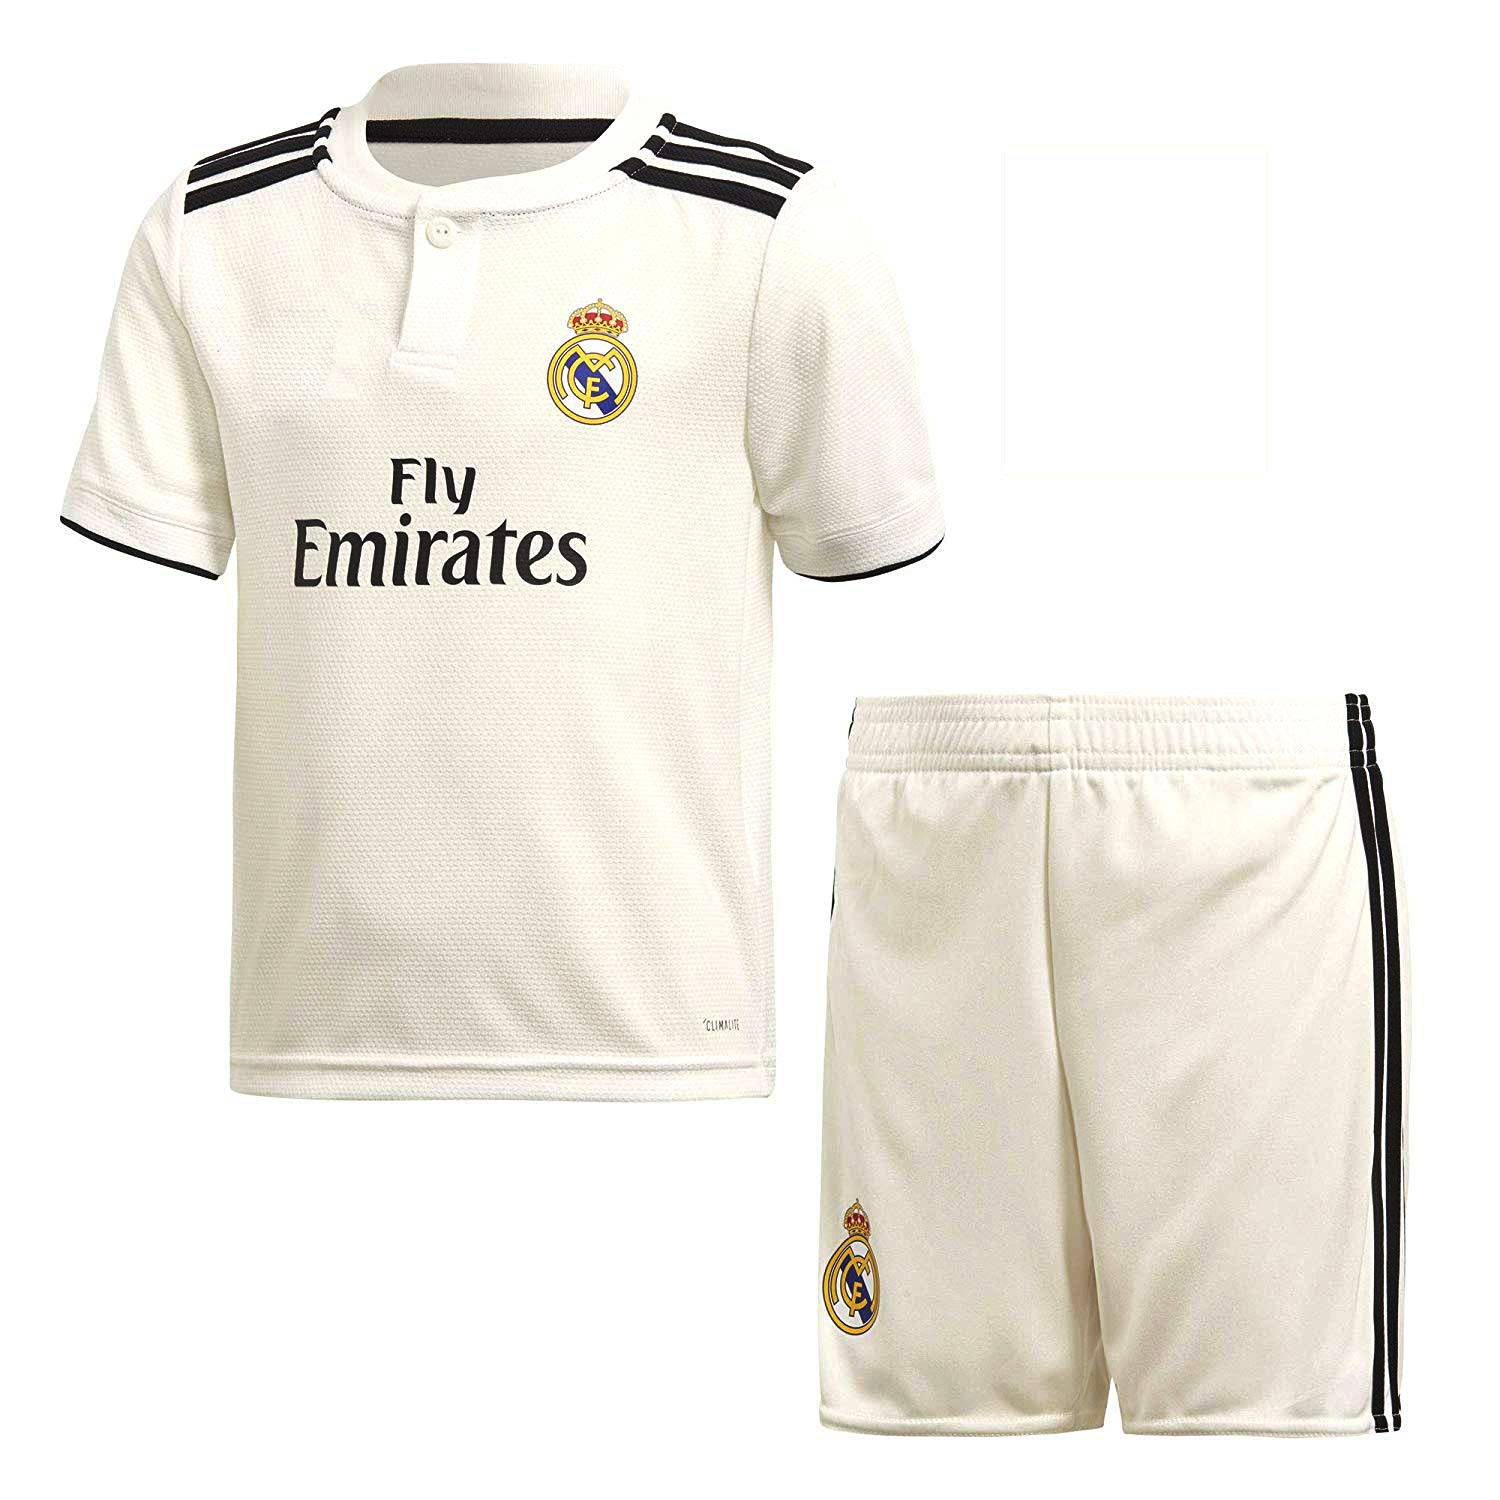 پیراهن و شورت ورزشی پسرانه طرح رئال مادرید کد 2018 رنگ سفید                      غیر اصل